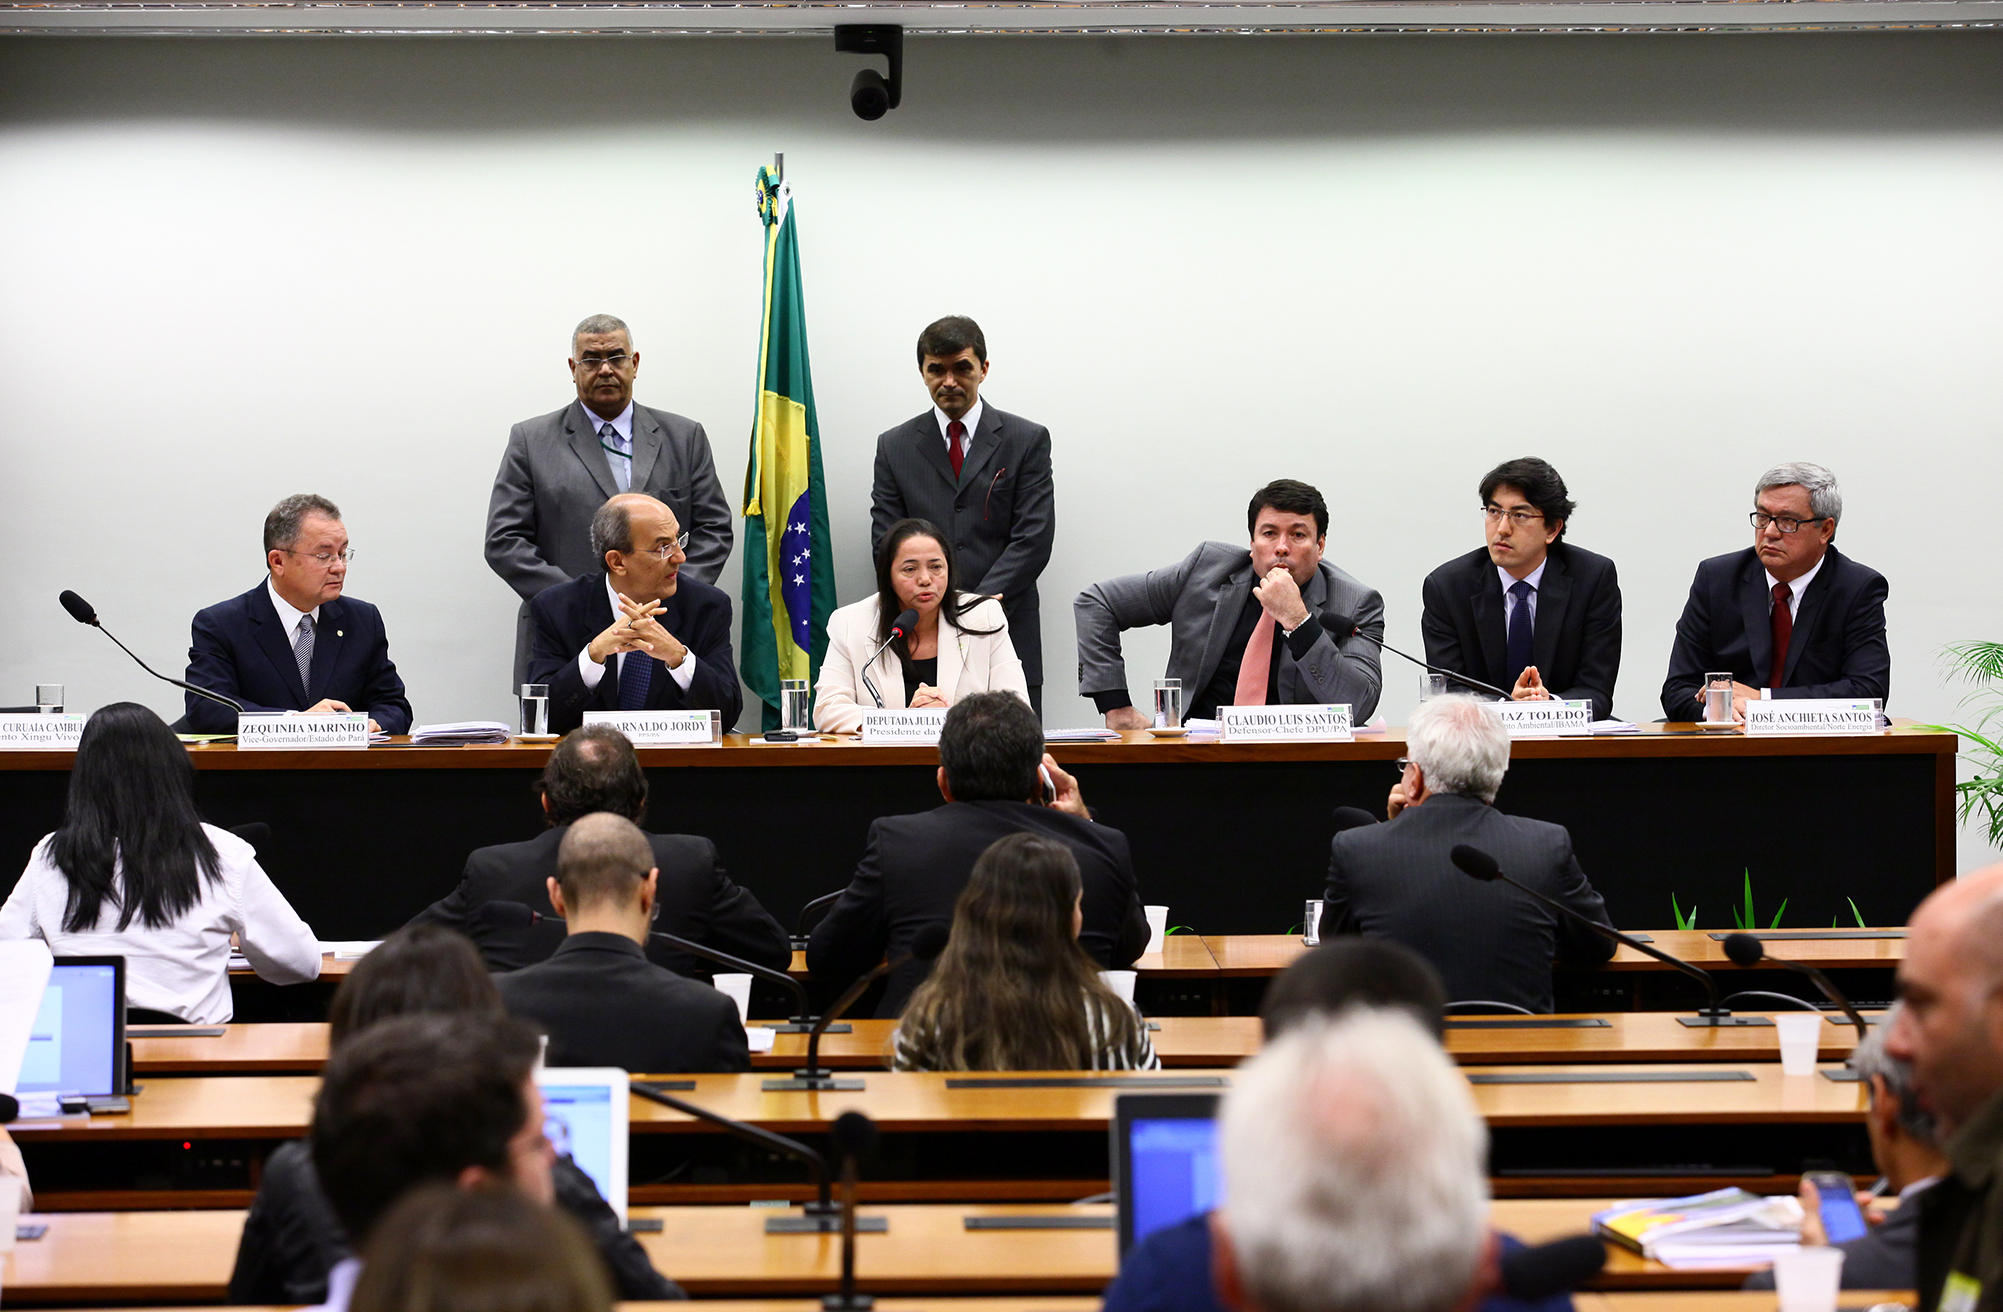 Debatedores discordam sobre prejuízos causados pela construção de Belo Monte